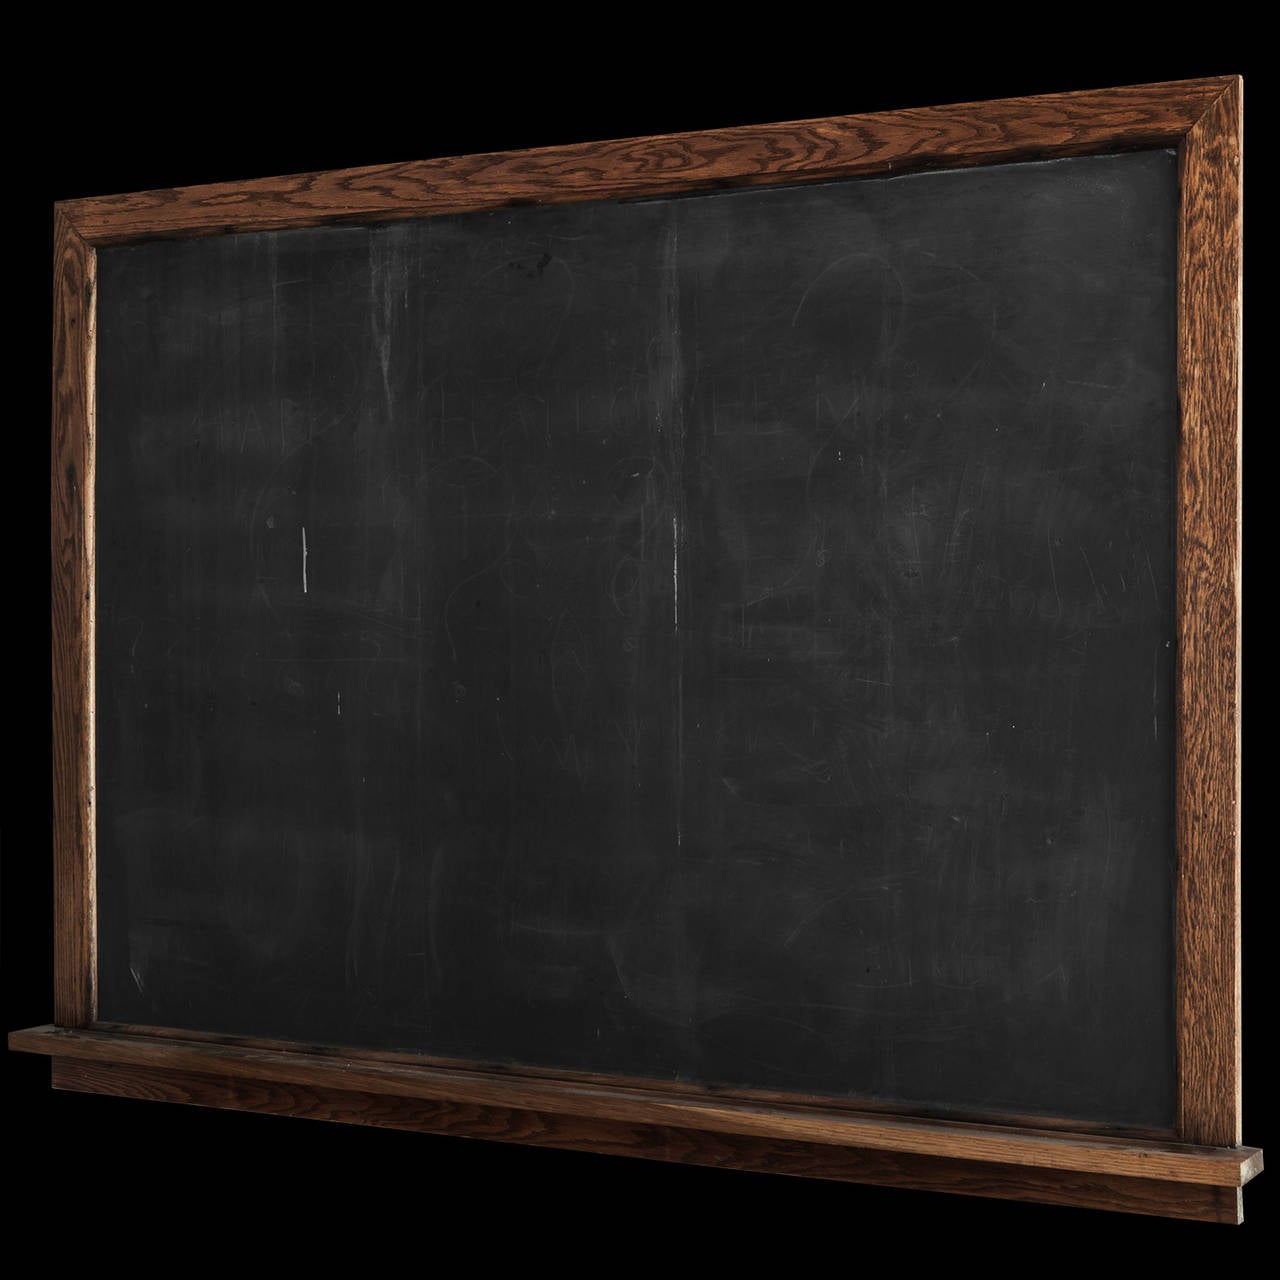 Slate chalkboard with oak frame.

Made in America circa 1920.